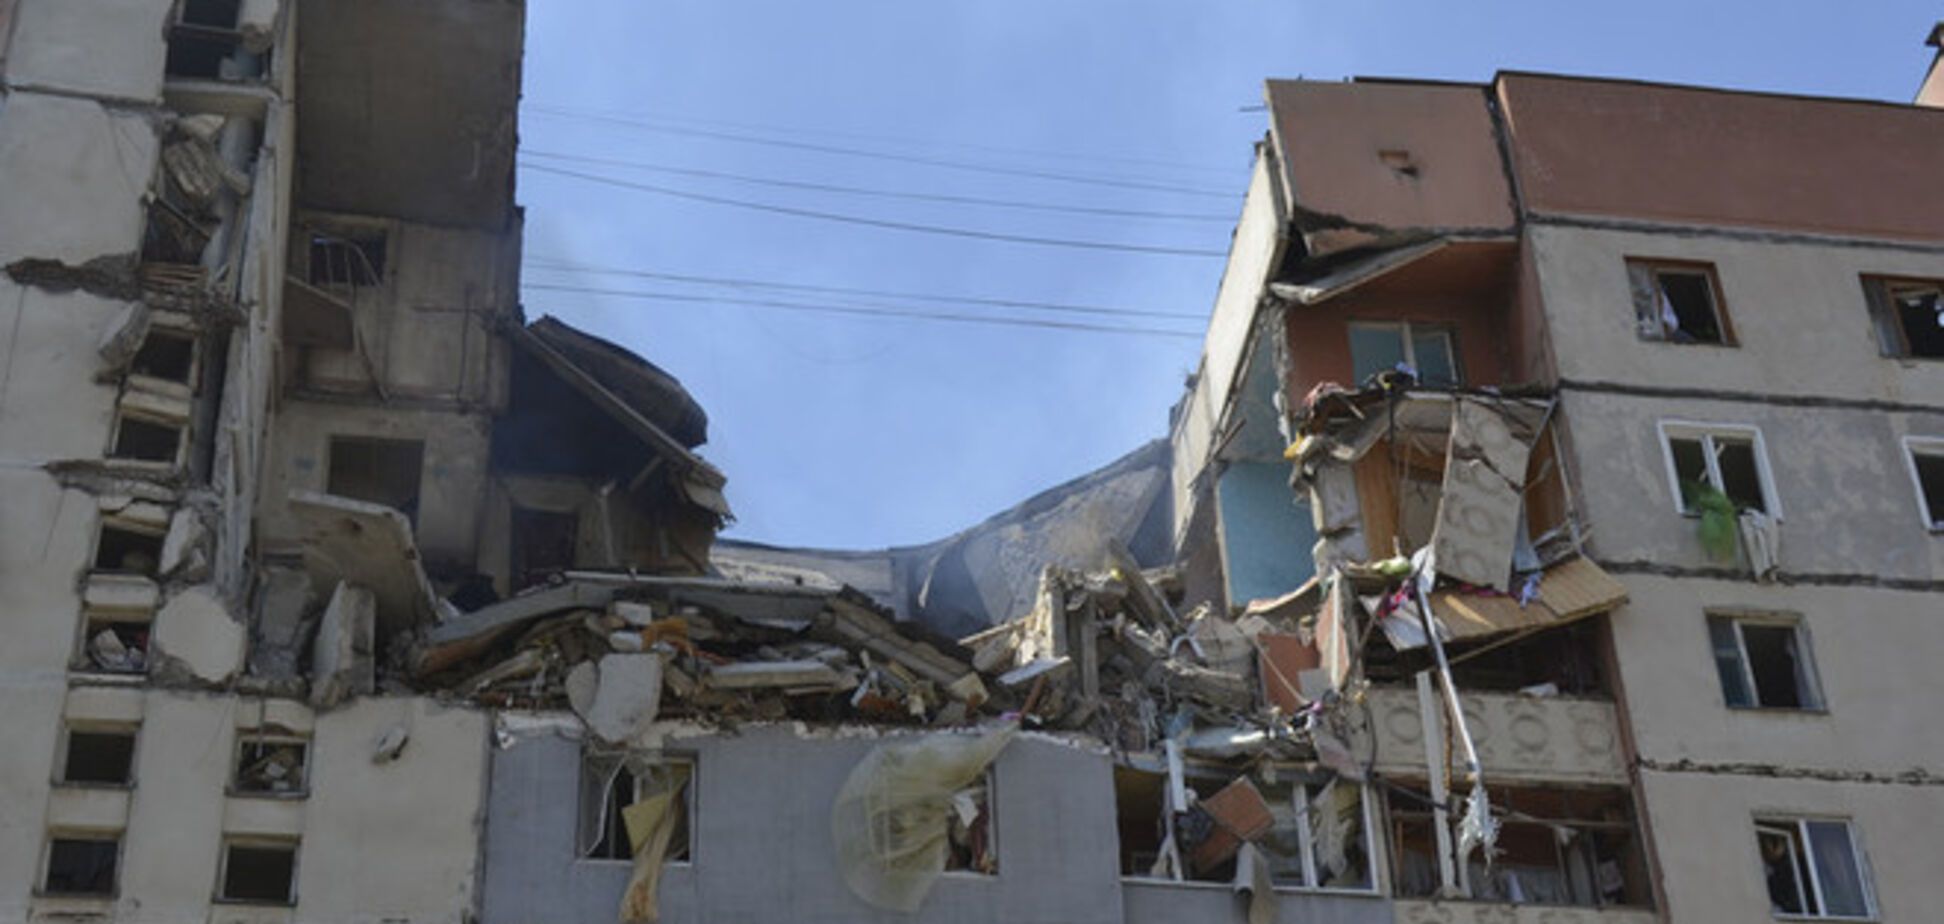 СМИ: из-под завалов дома в Николаеве извлекли тело предполагаемого виновника взрыва 